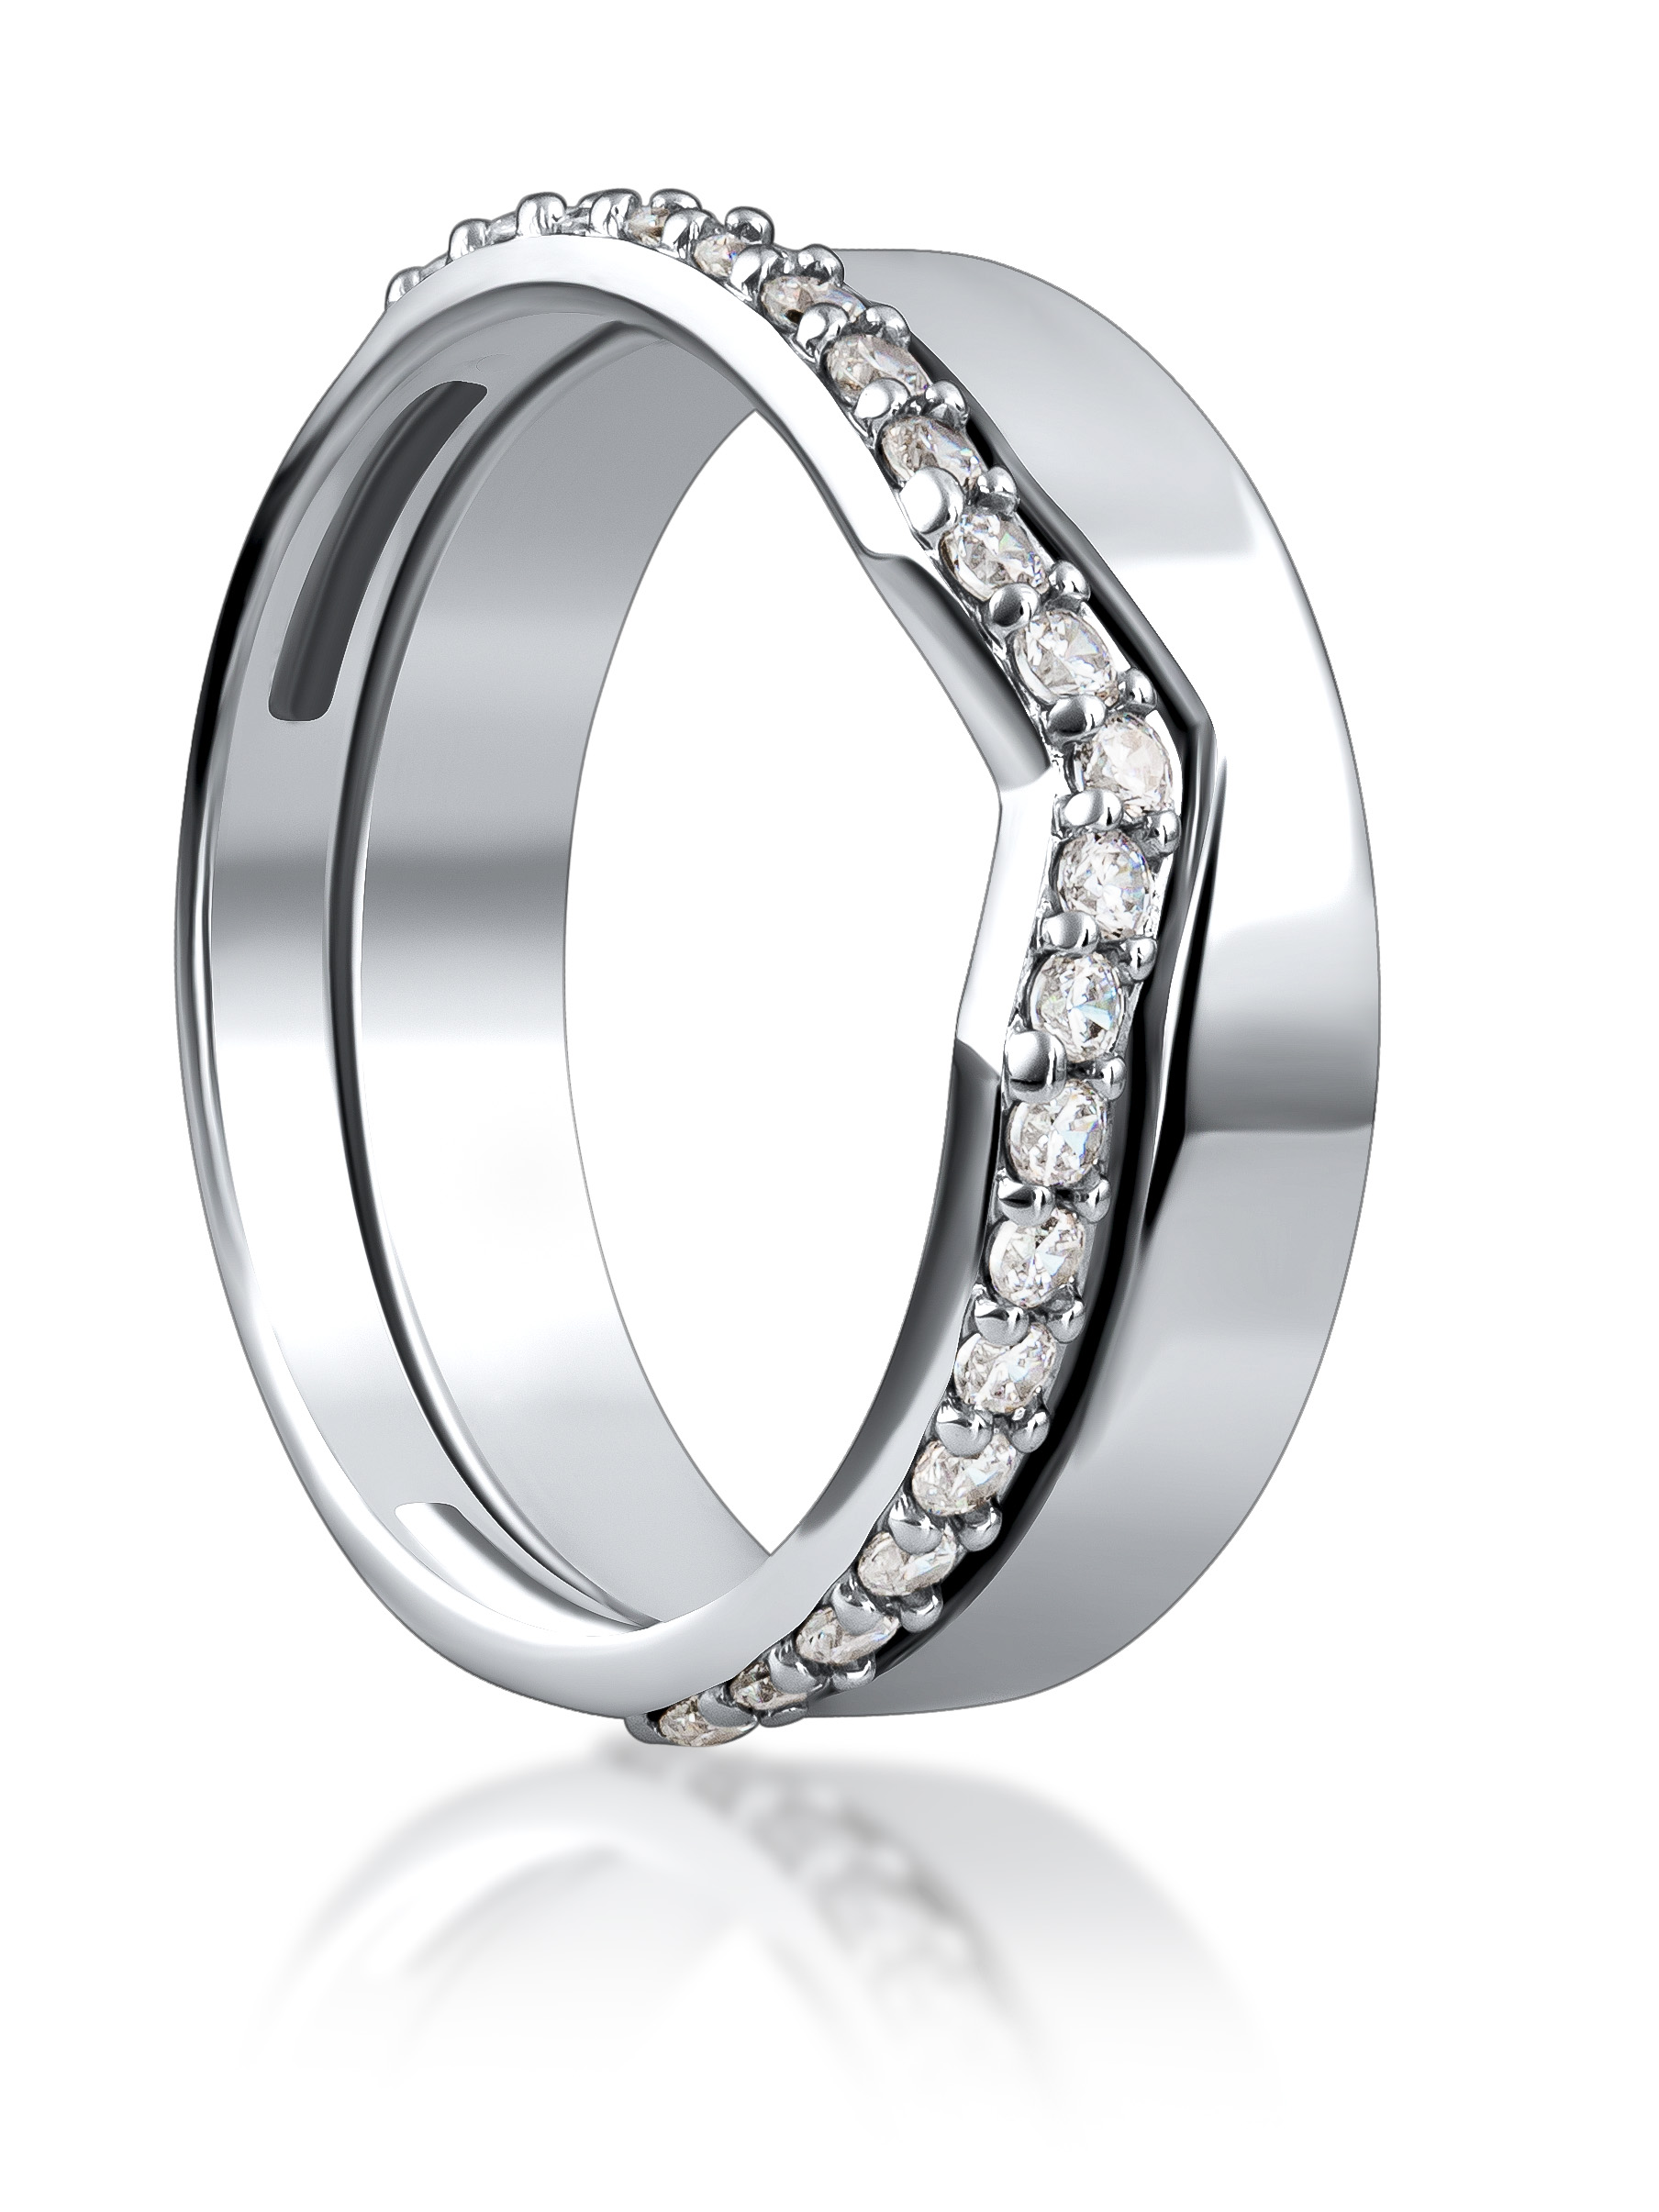 Обручальное женское кольцо дорожка из серебра 925 пробы, артикул 2799.1